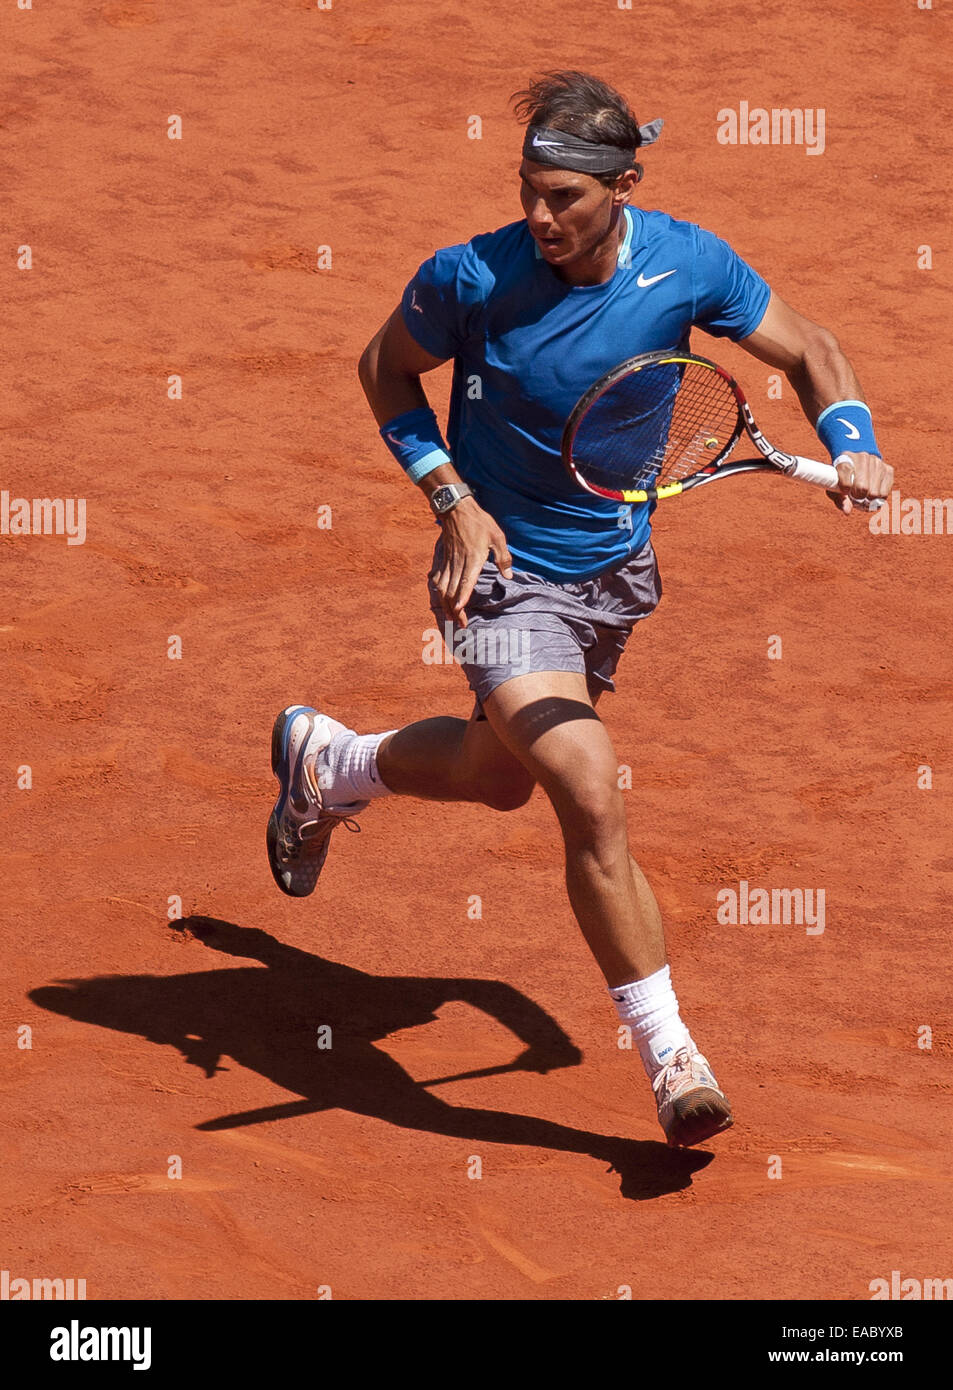 2014 Mutua Madrid Open Uomini Singoli - Rafael Nadal v Tomas BERDYCH - Quarti di finale. Rafael Nadal ha sconfitto Tomas BERDYCH oltre 2 set (6-4, 6-2) con: Rafael Nadal dove: Madrid, Spagna Quando: 09 Maggio 2014 Foto Stock